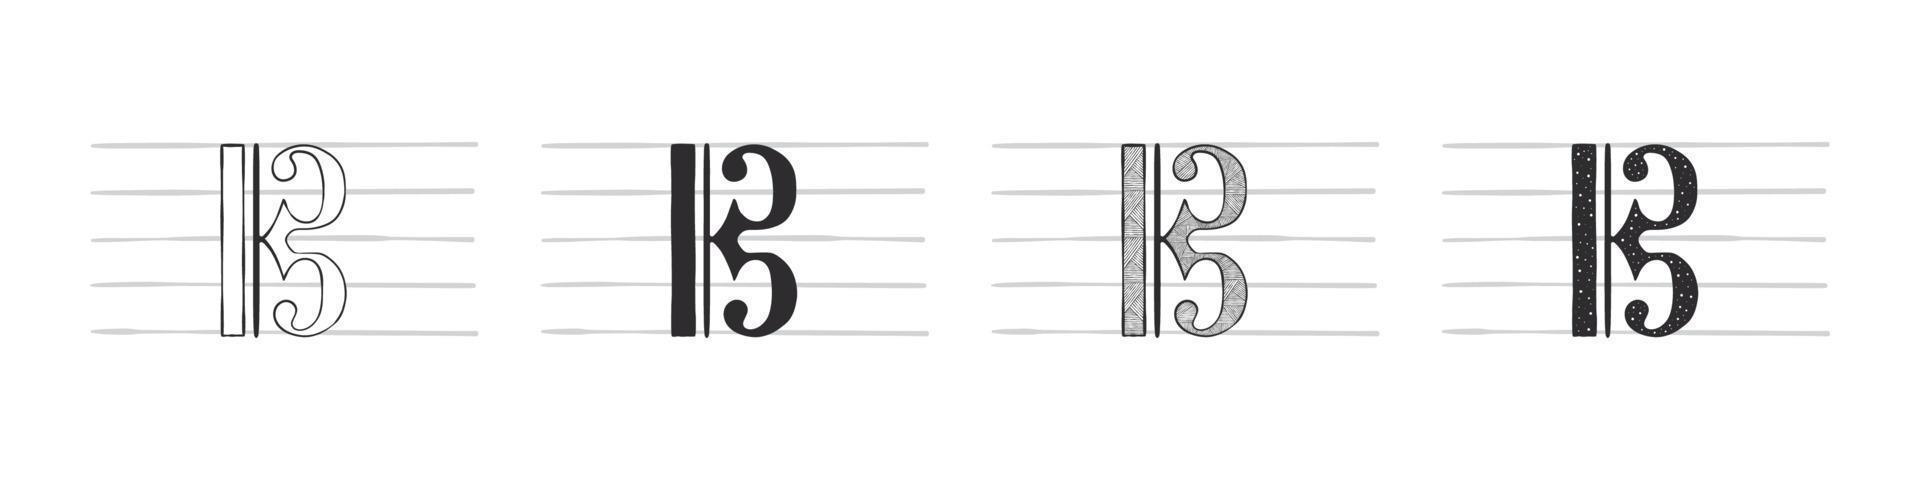 musik anteckningar. musikalisk symbol med en nyckel. ritad för hand musikalisk symboler i olika variationer. vektor illustration